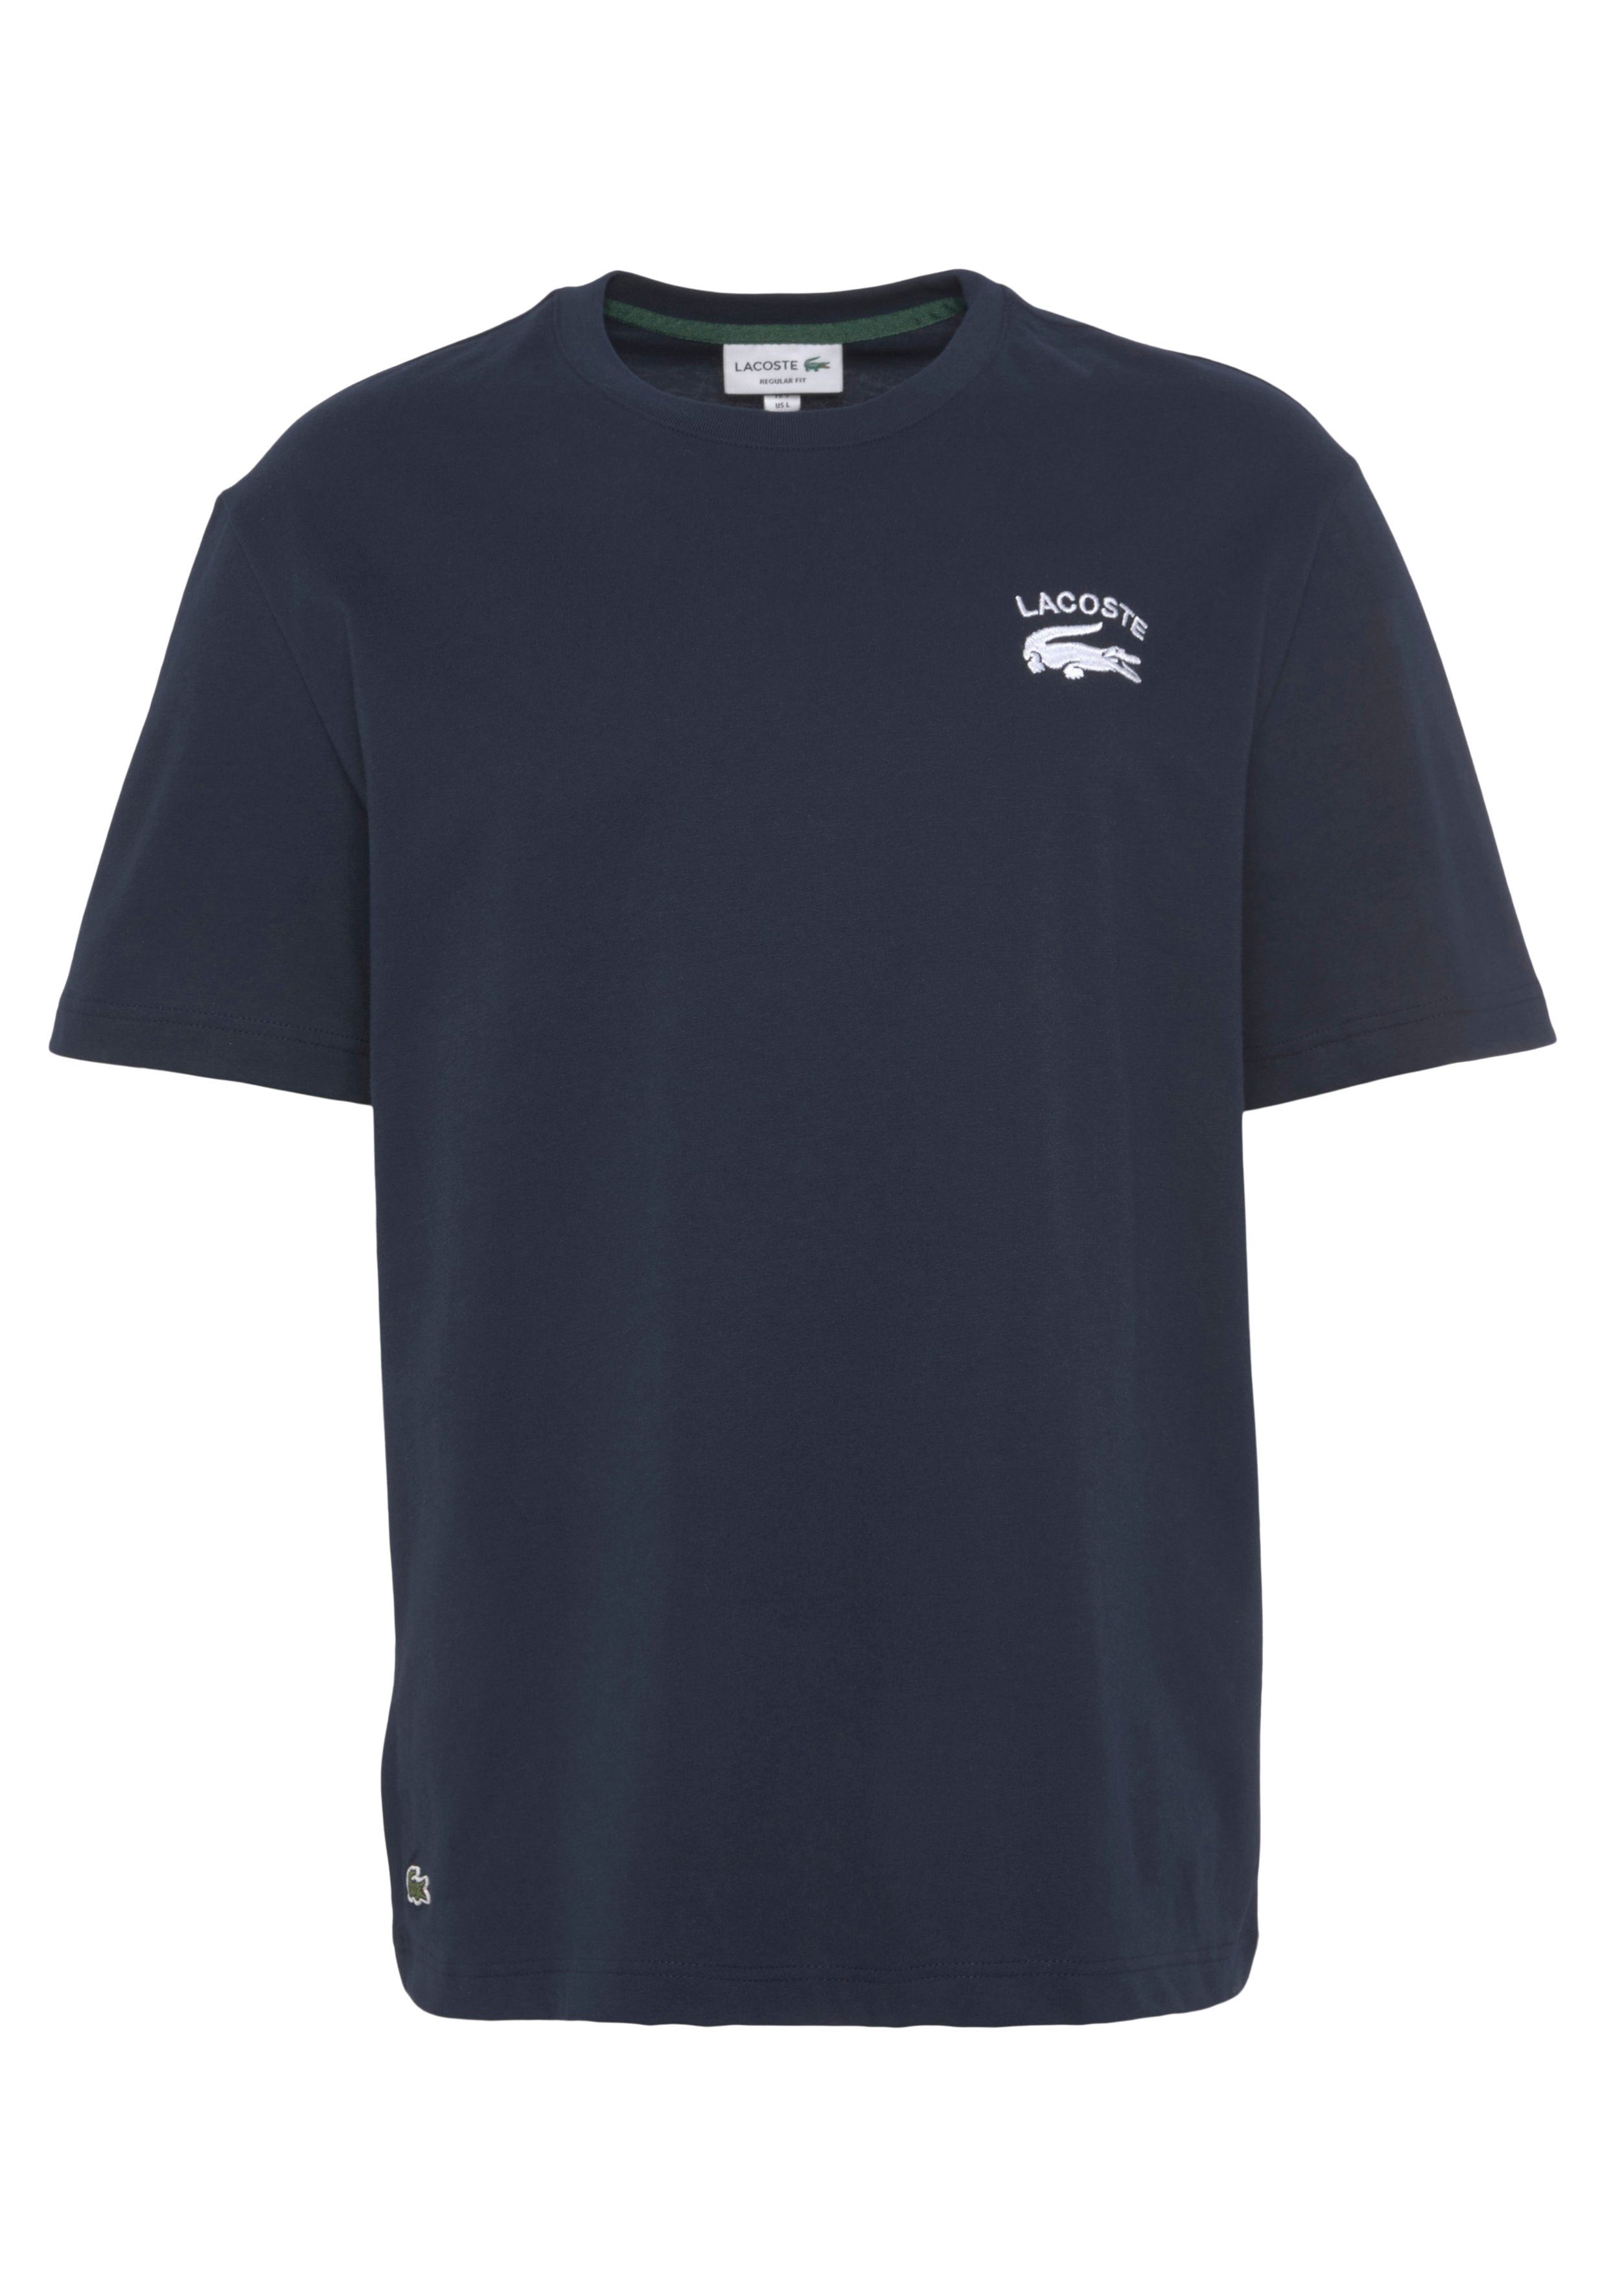 Lacoste T-Shirt mit kleinem Print hinten über dem Saum navy